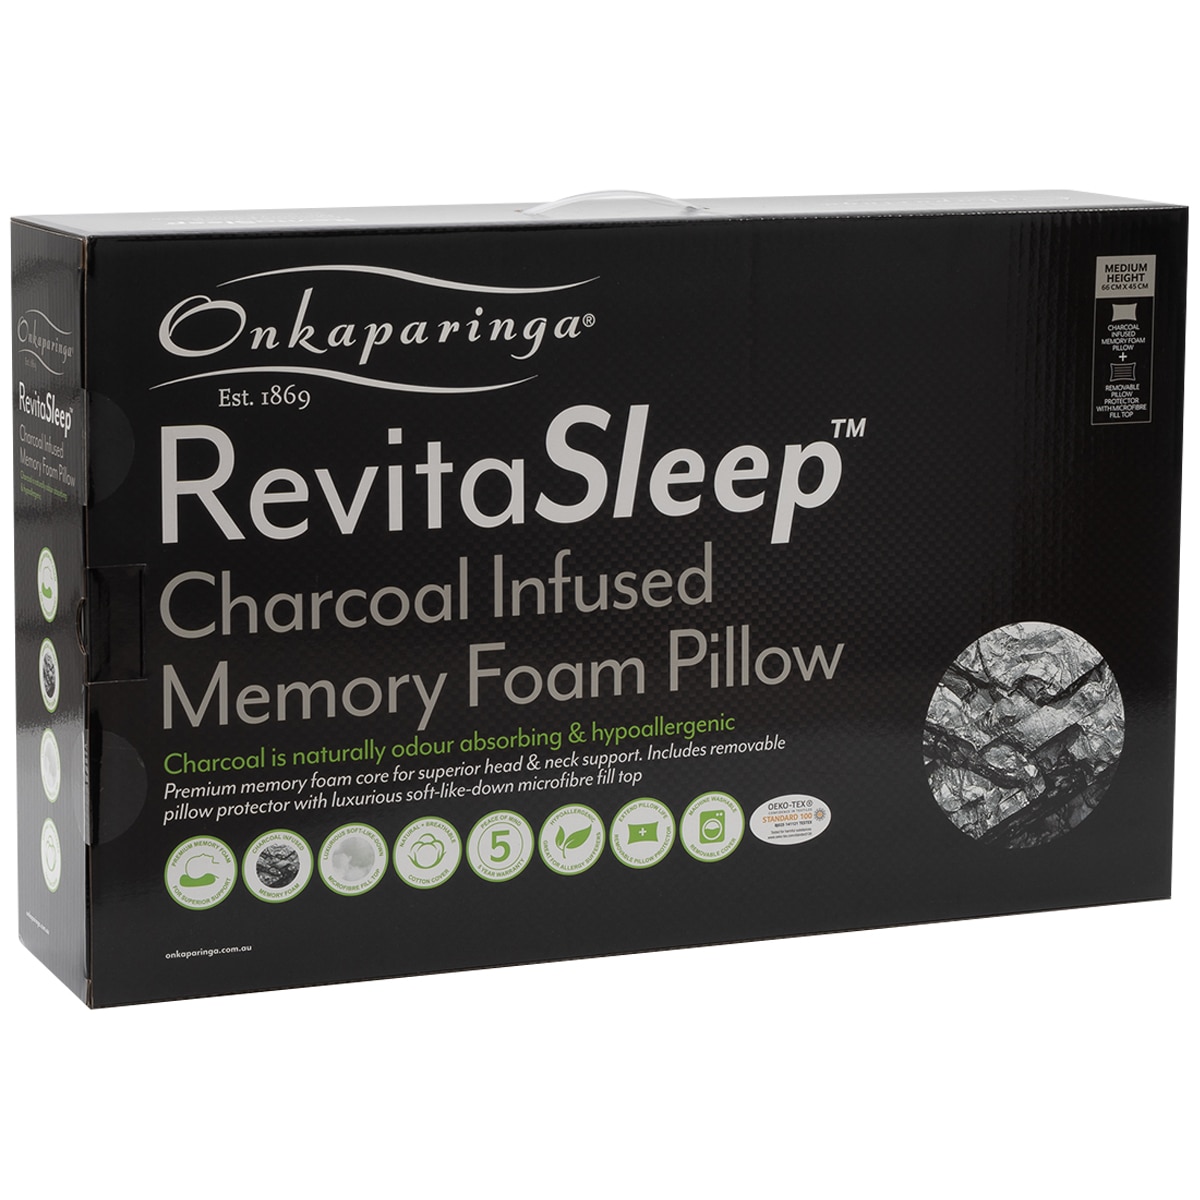 Onkaparinga Charcoal Memory Foam Pillow